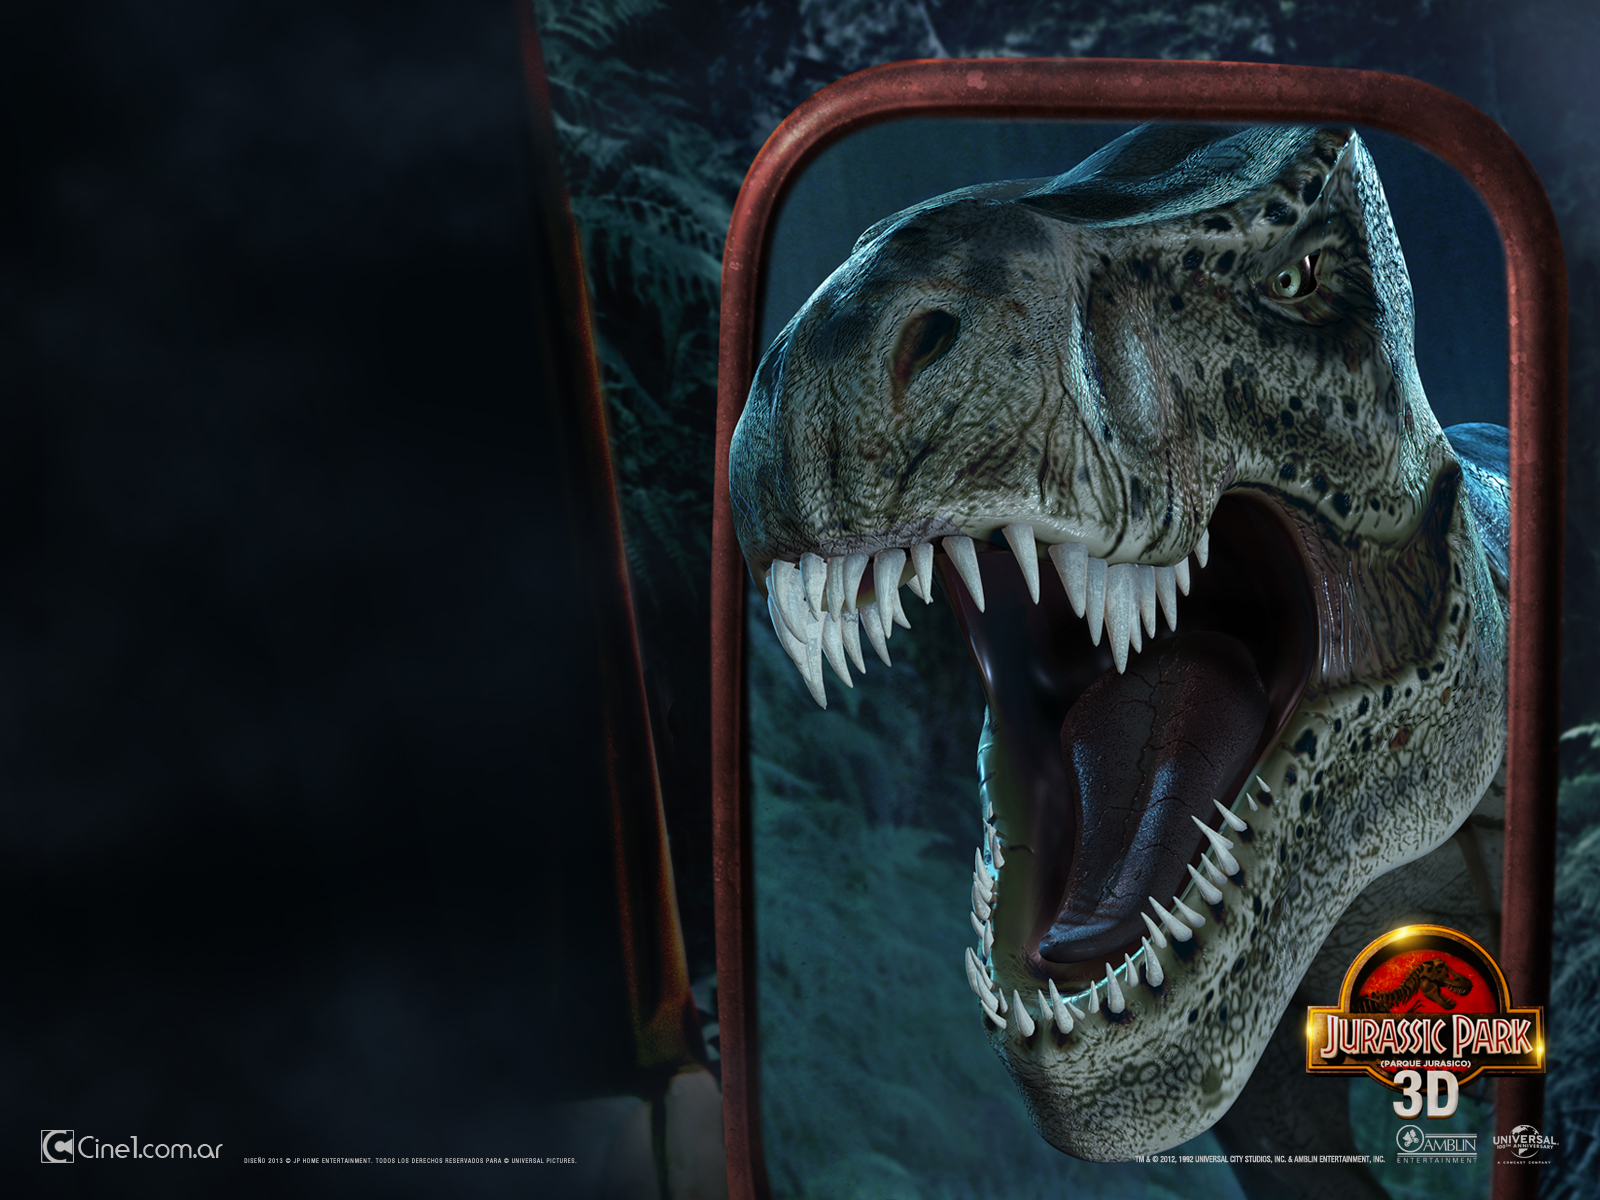 Wallpaper Latino De Jurassic Park 3d Diferentes Resoluciones